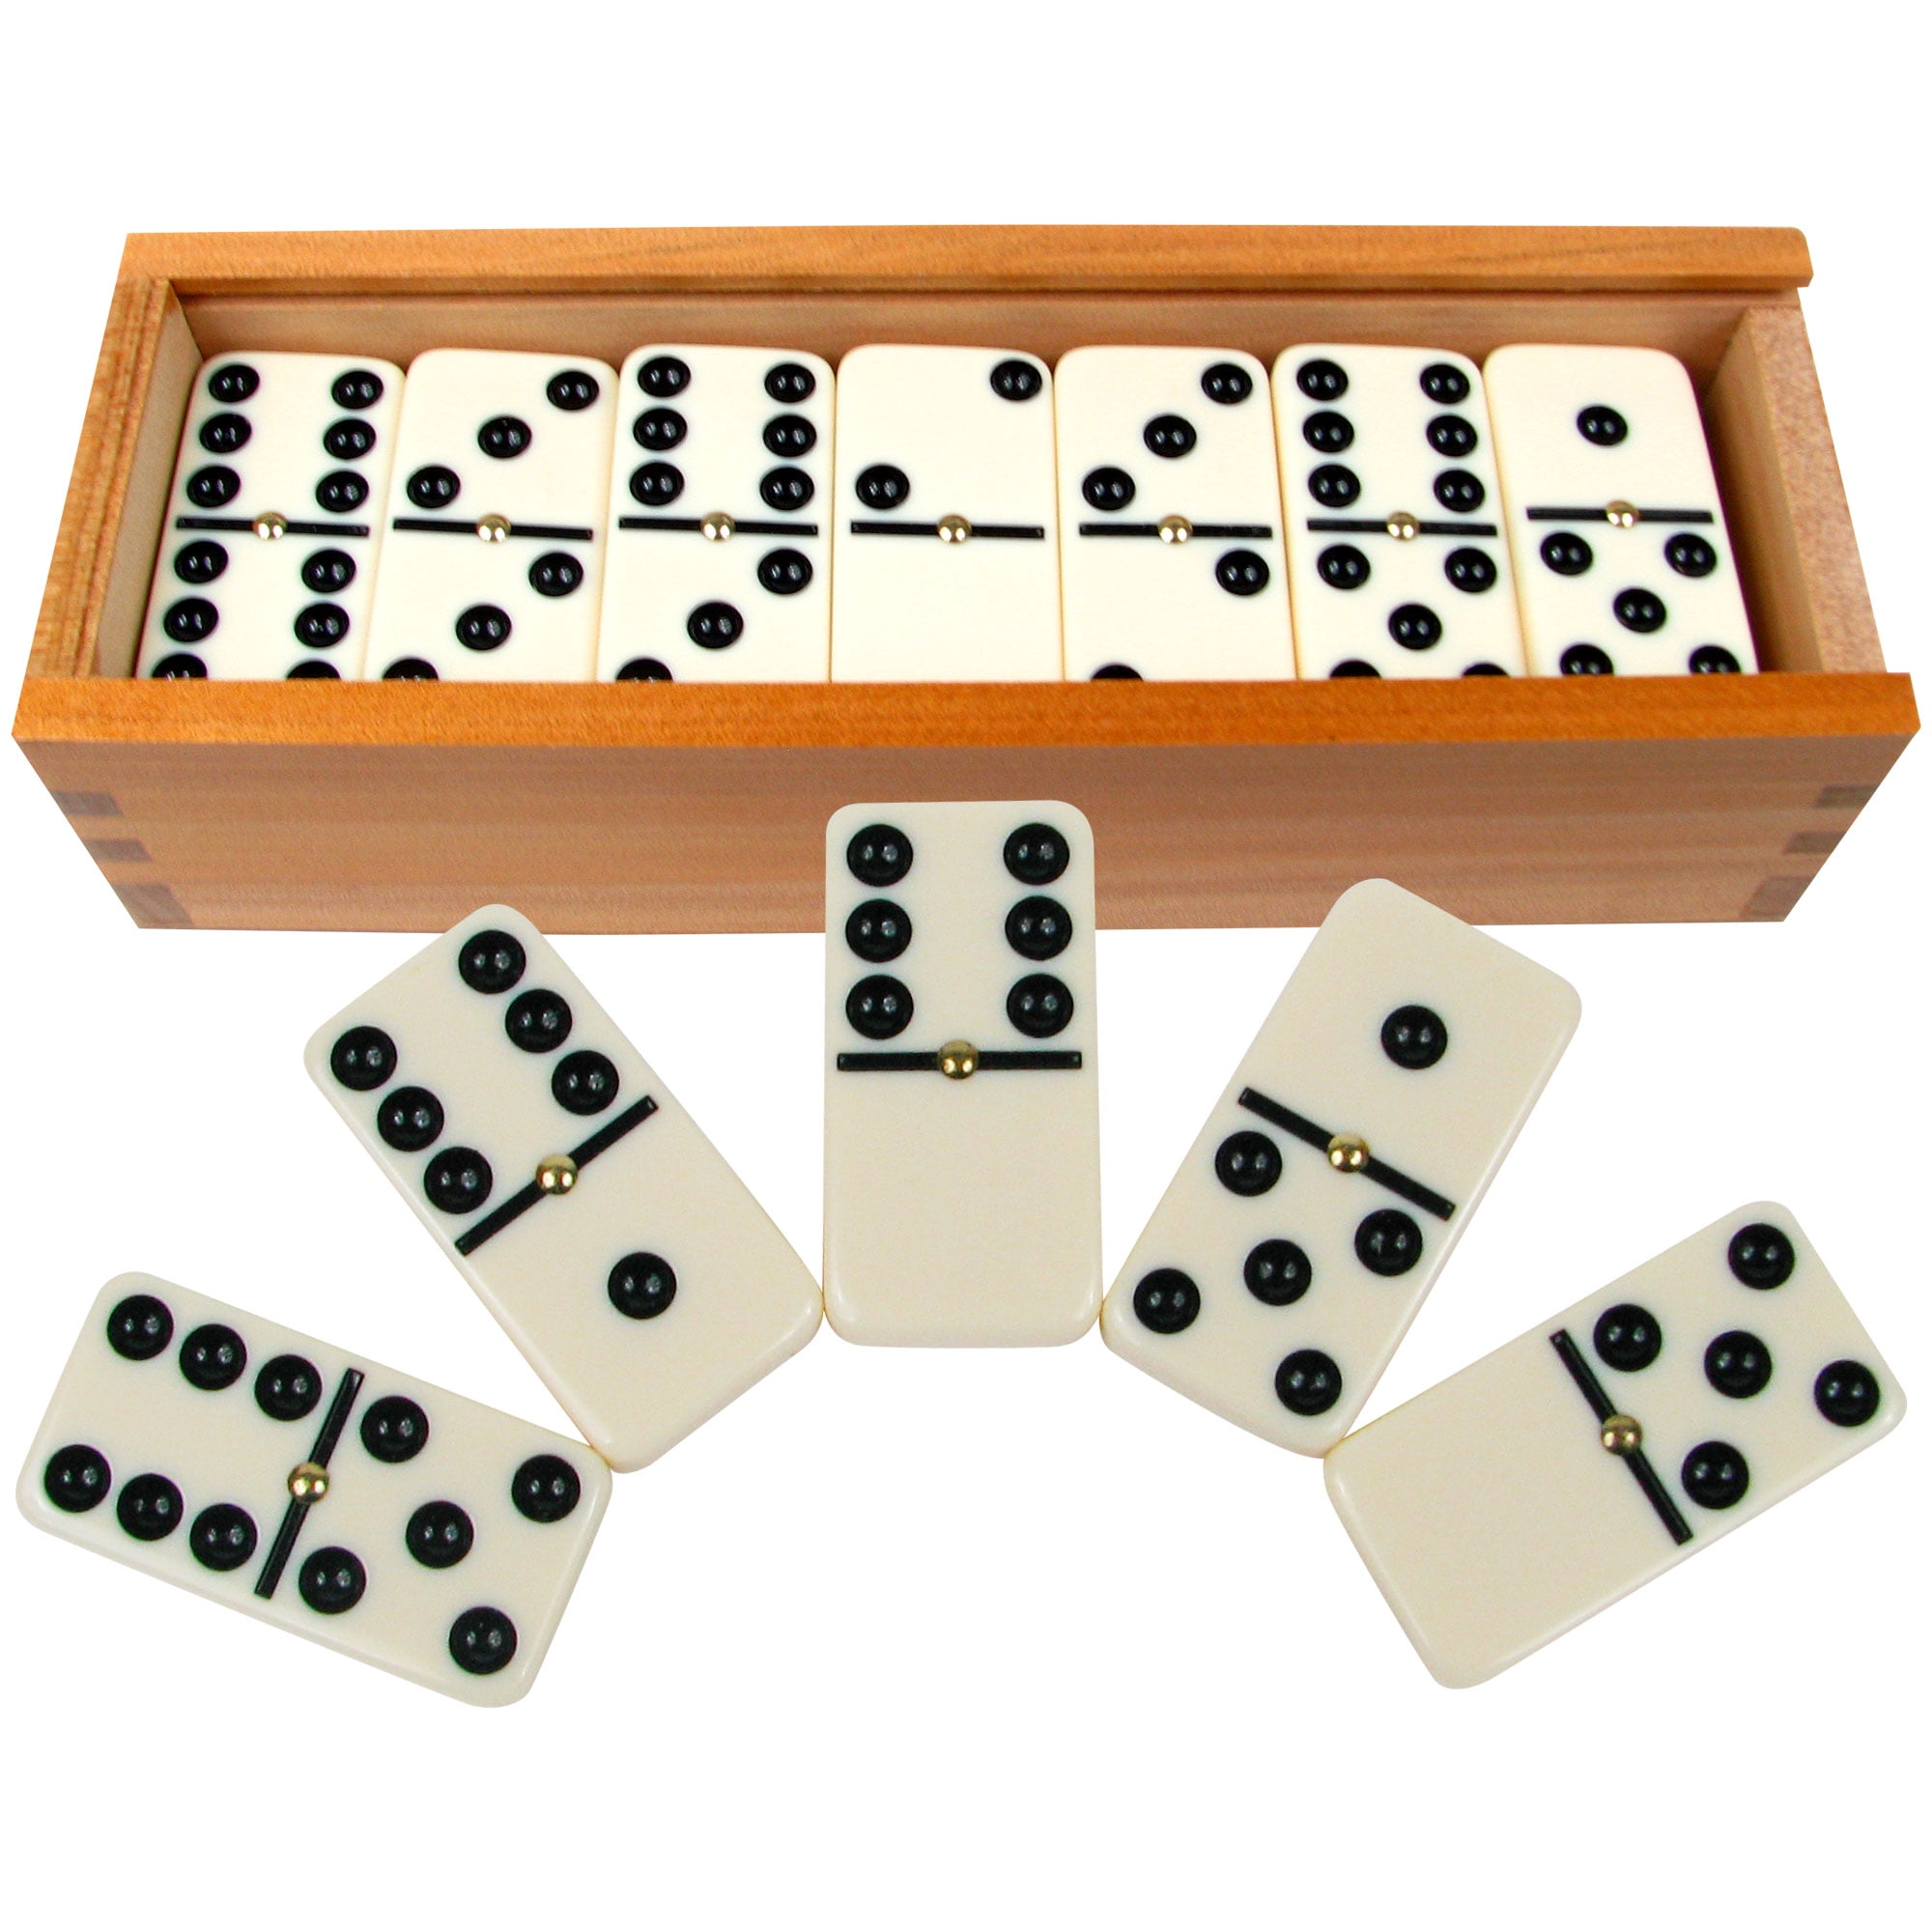 Conjunto de jogo de dominó clássico duplo Smilejoy 9 com girador 55  unidades para 2 a 7 jogadores